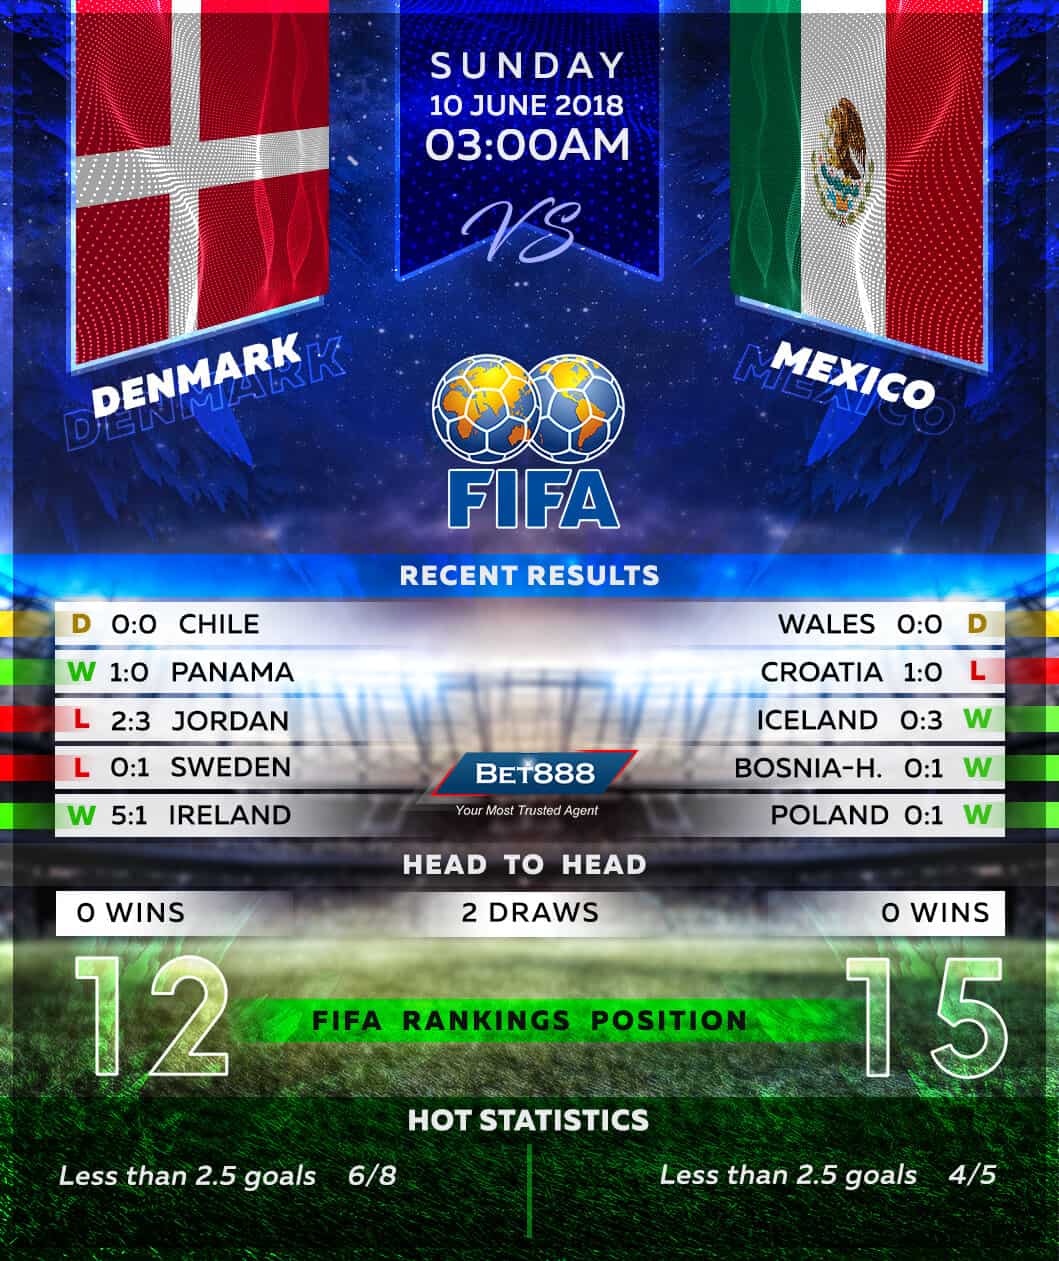 Denmark vs Mexico 10/06/18